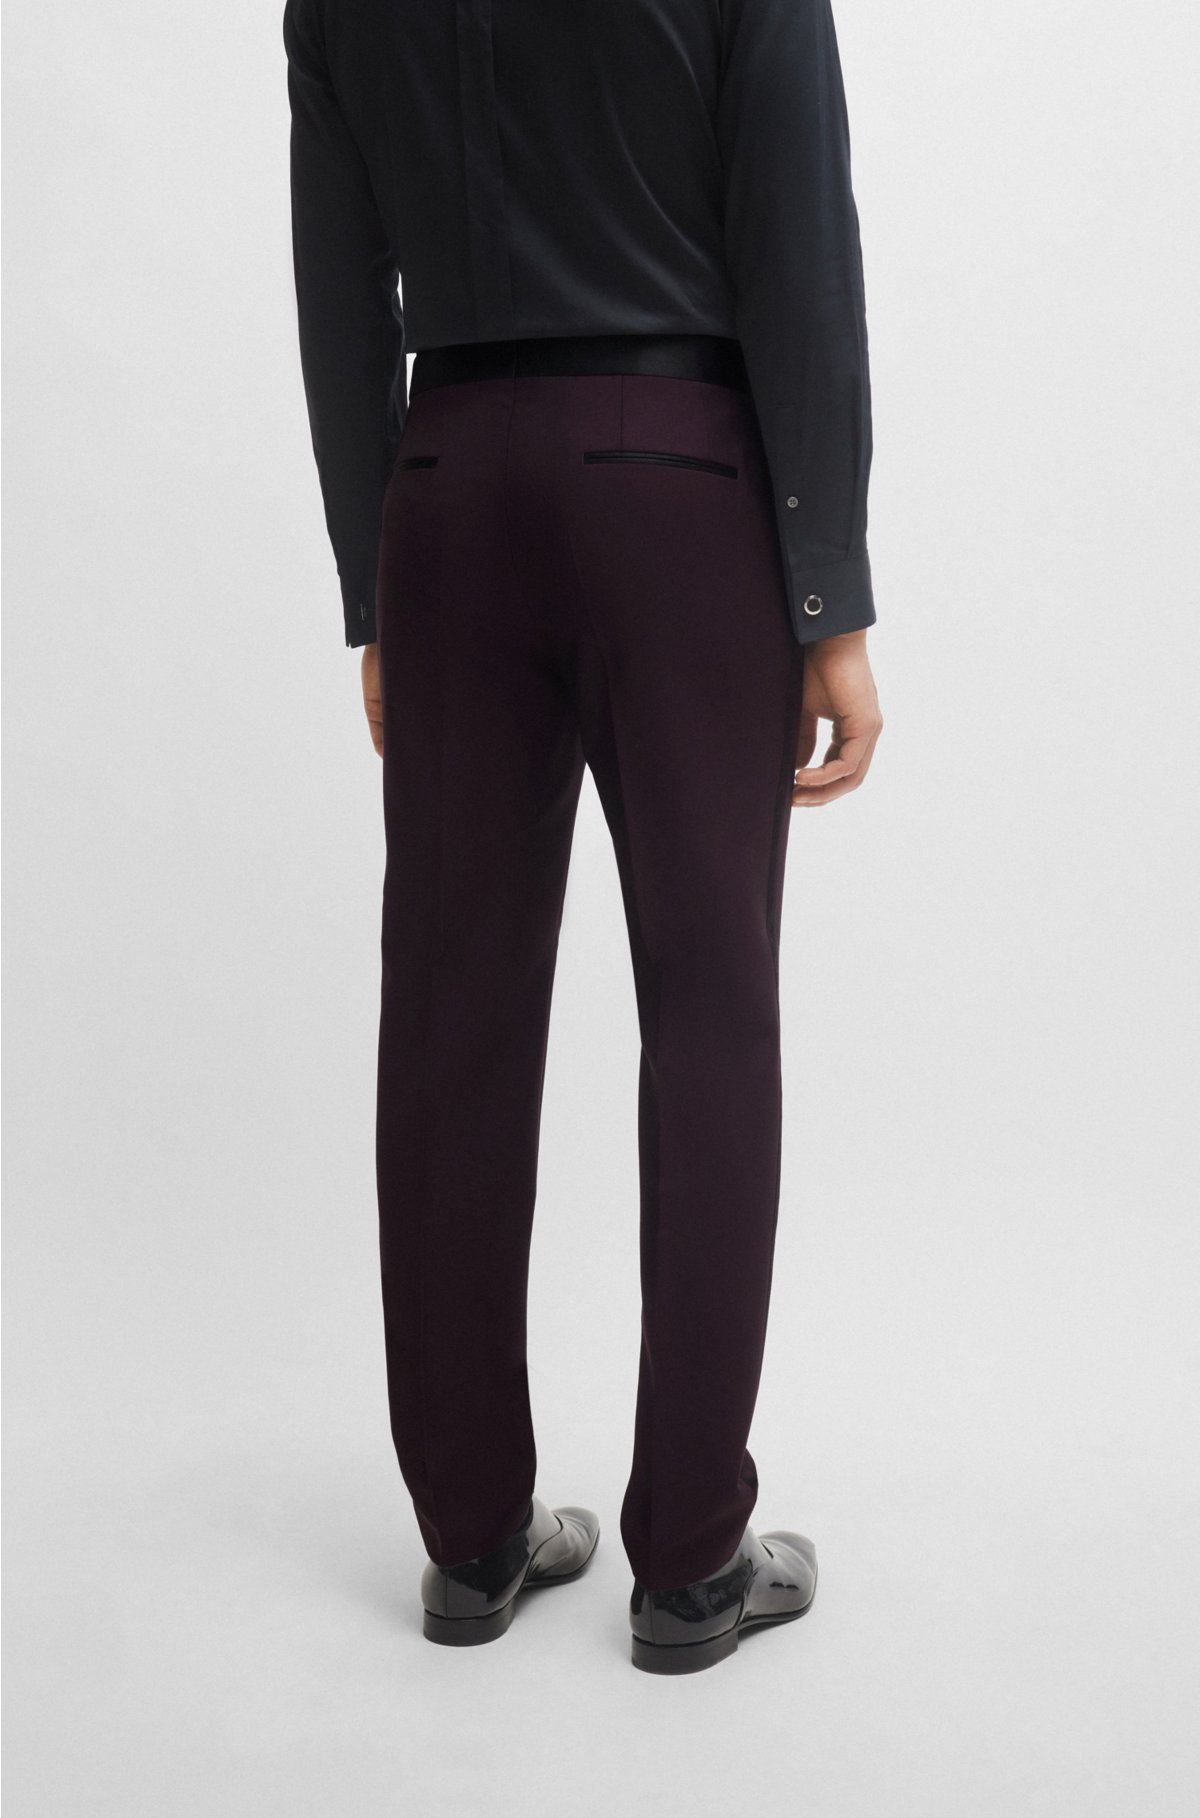 Men's Polyester Tuxedo Trousers ― item# 27112